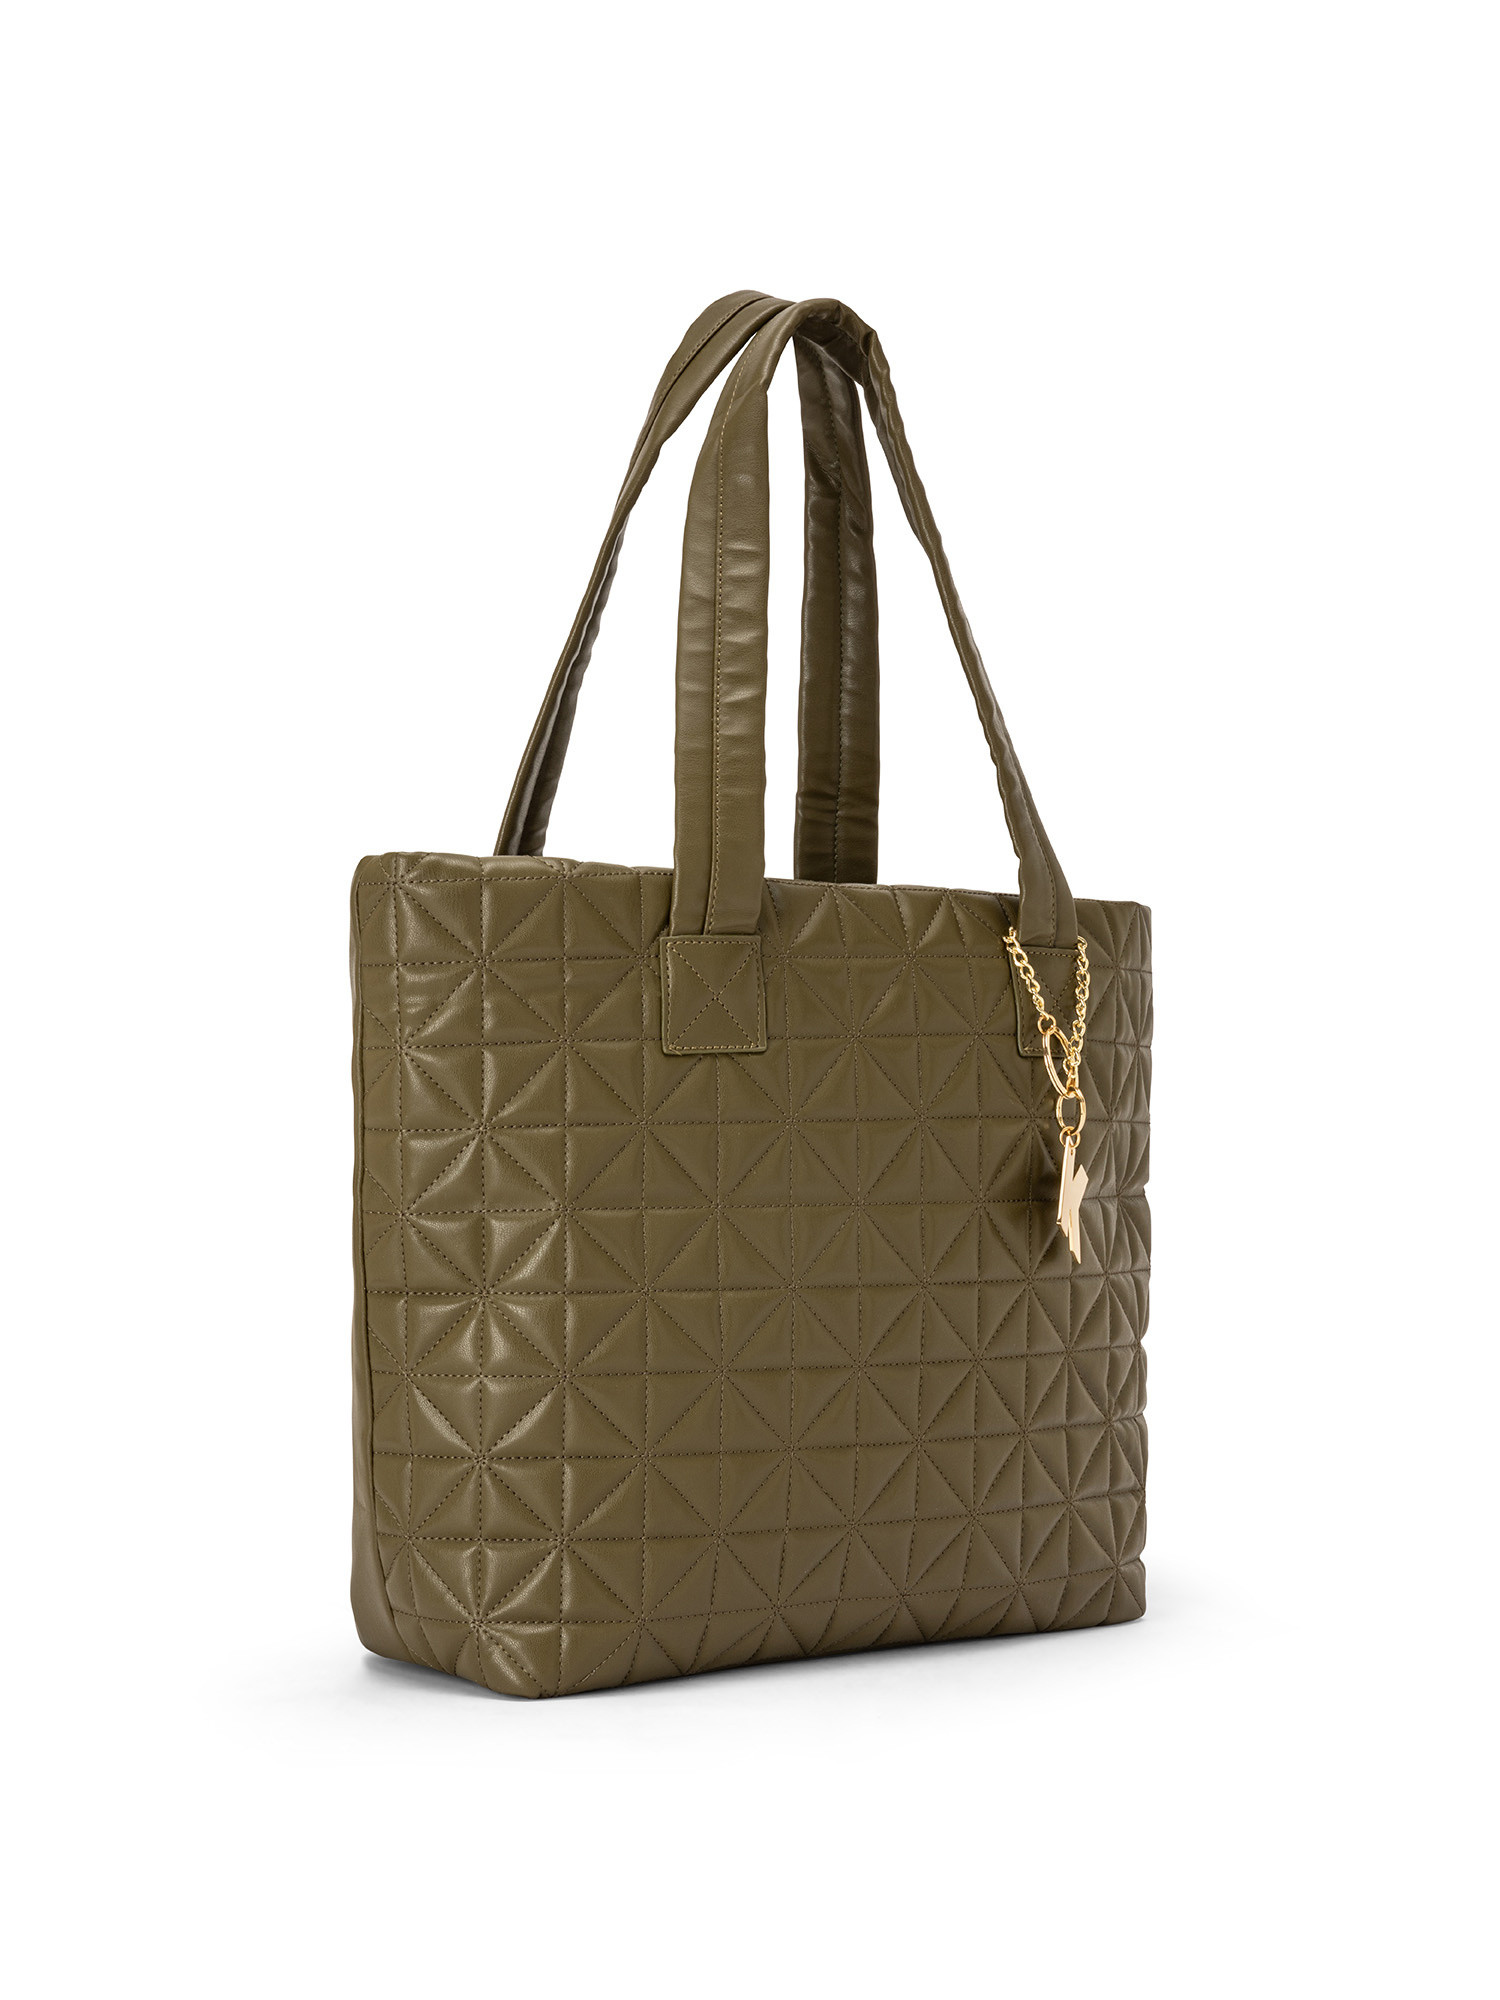 Koan - Shopping bag with motif, Green, large image number 1